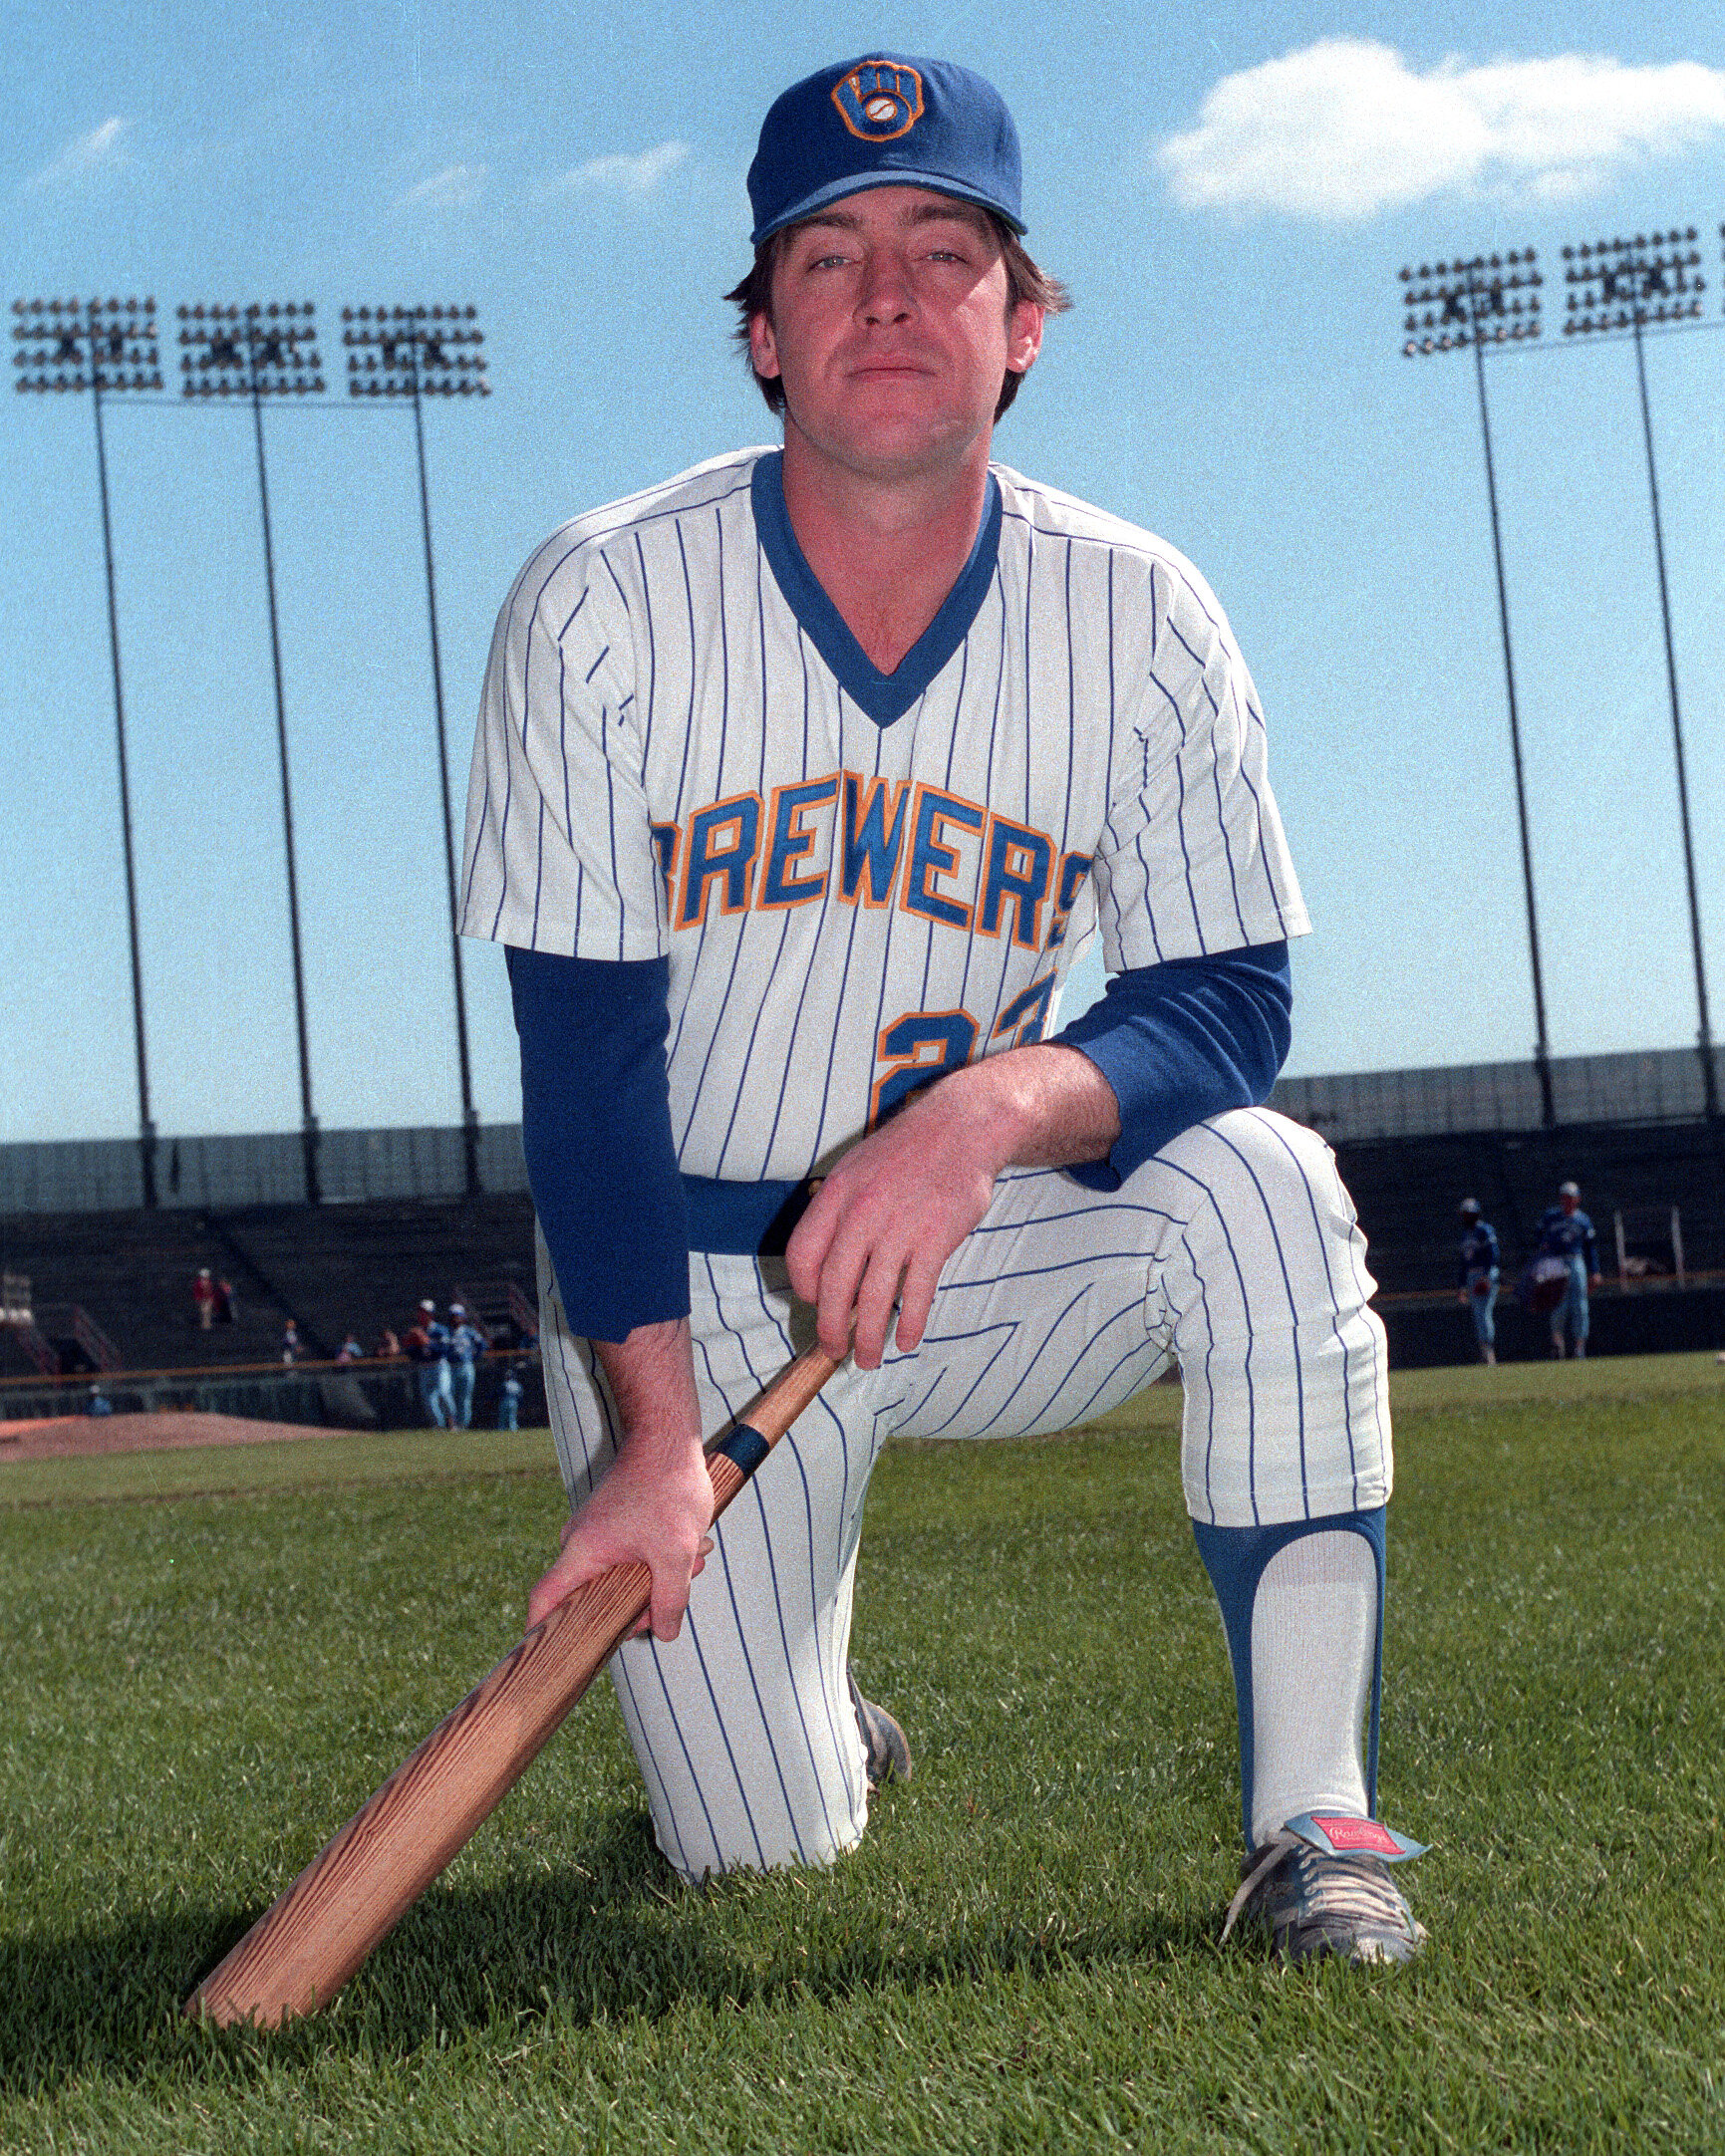 Ted Simmons (Hall of Fame) Baseball Cards